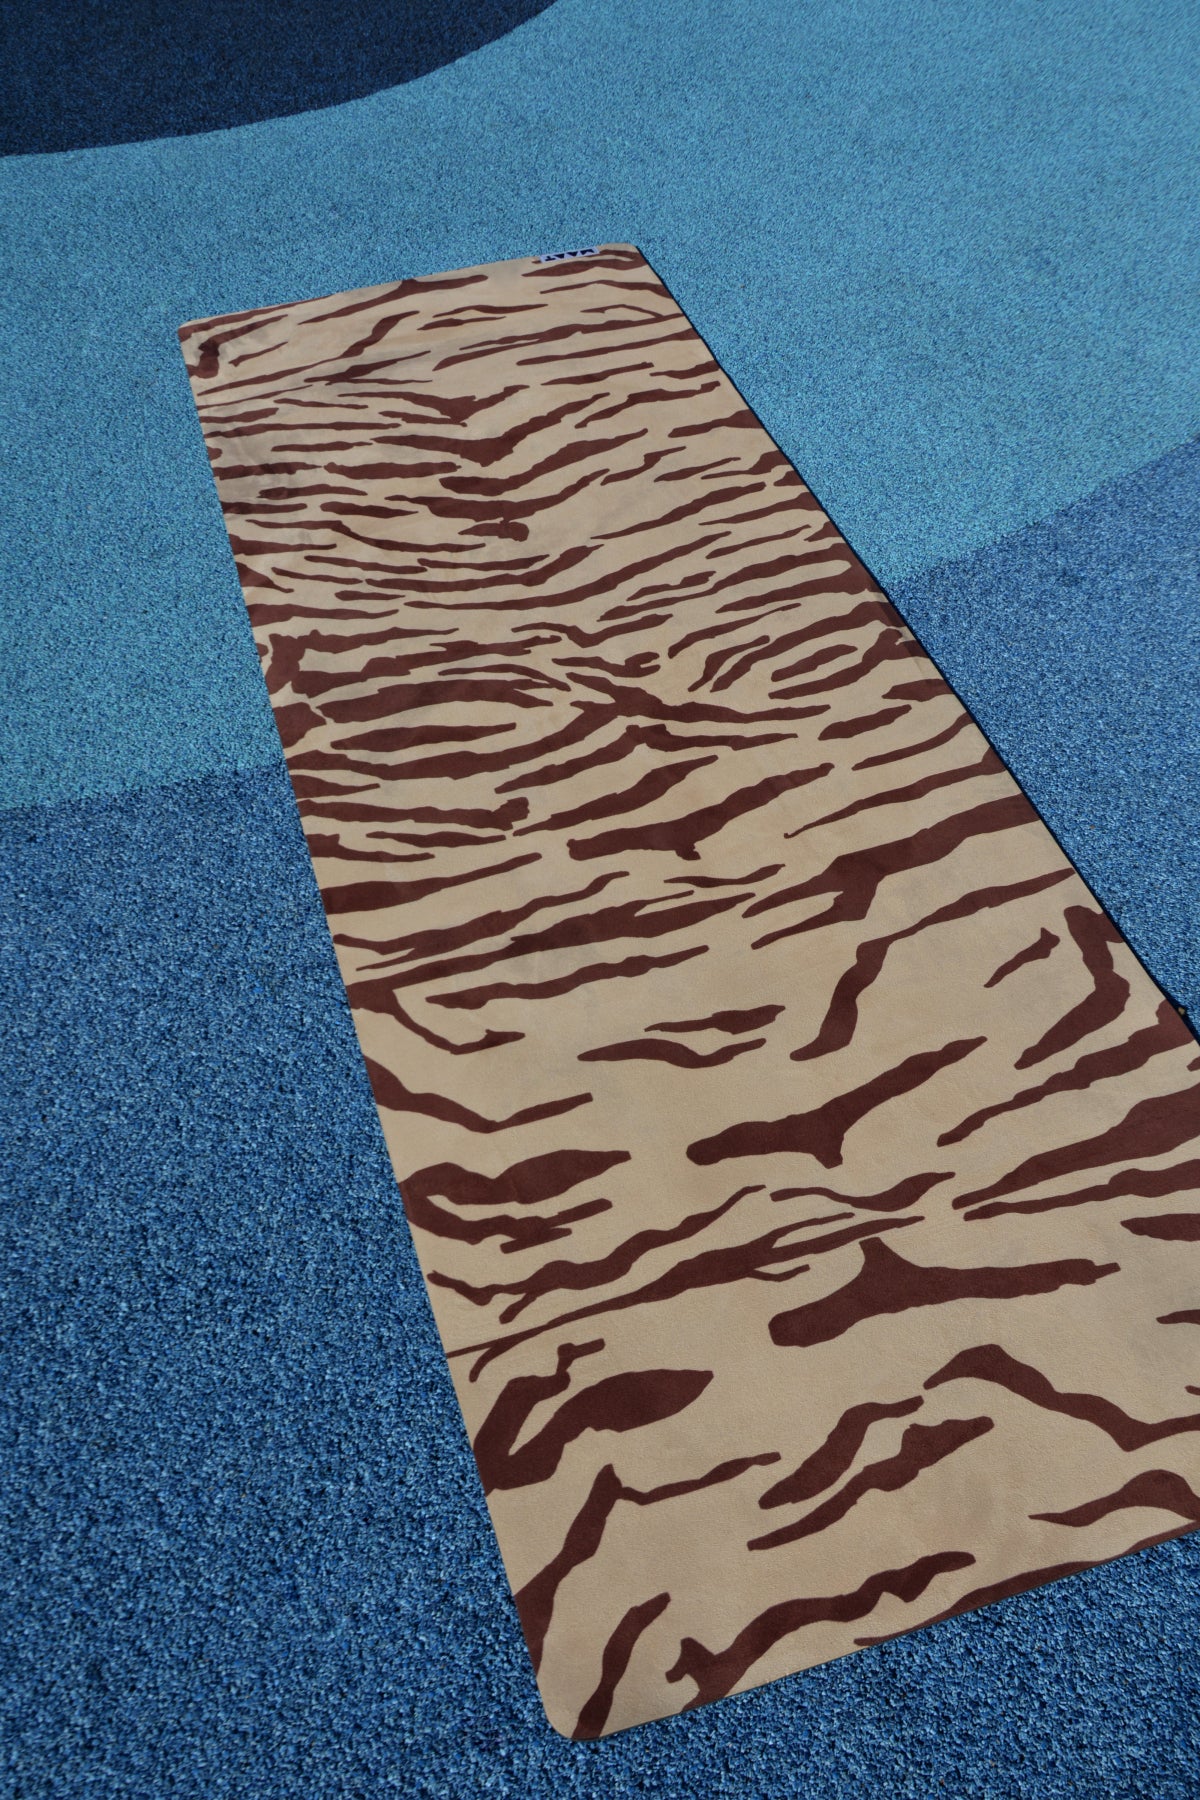 tiger print yoga mat product shot blue floor